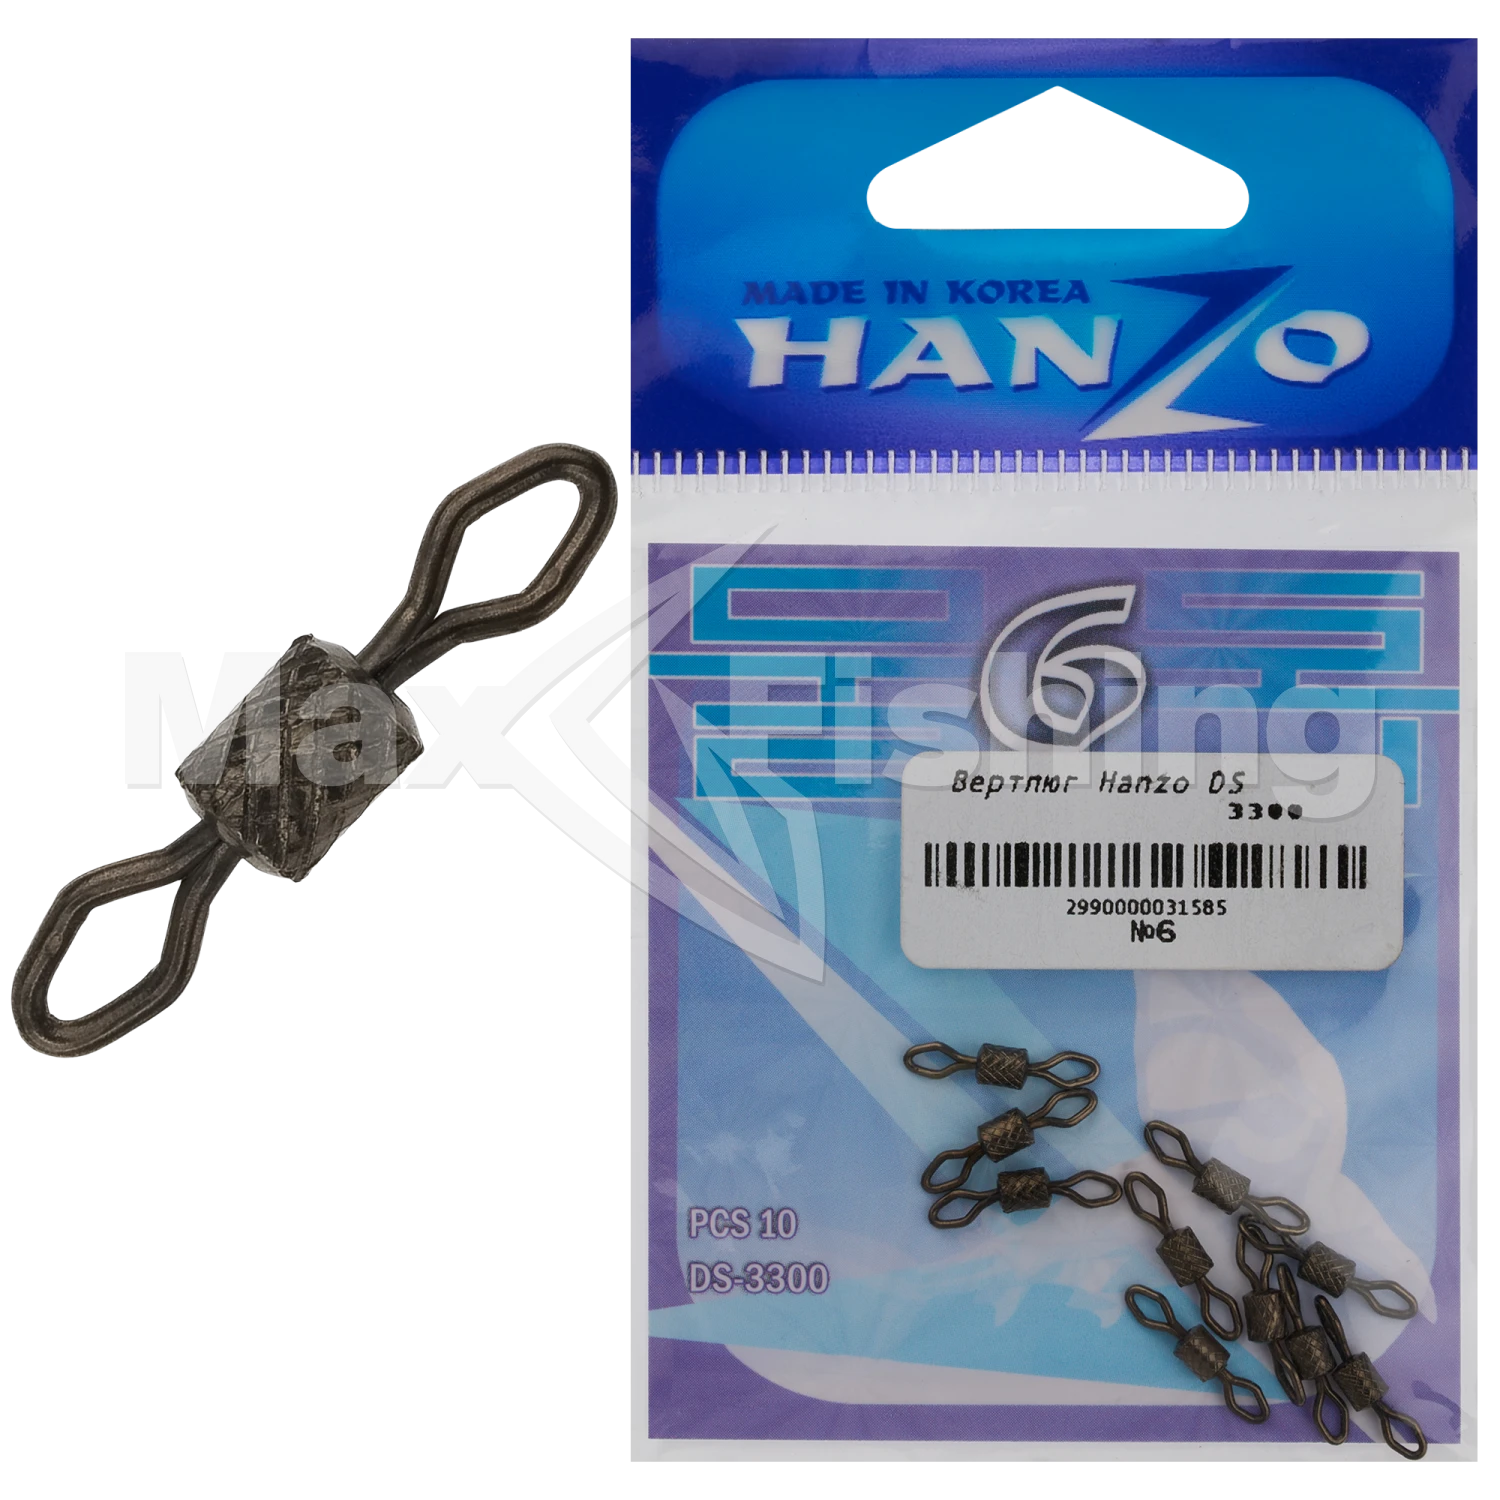 Вертлюг Hanzo DS 3300 #6